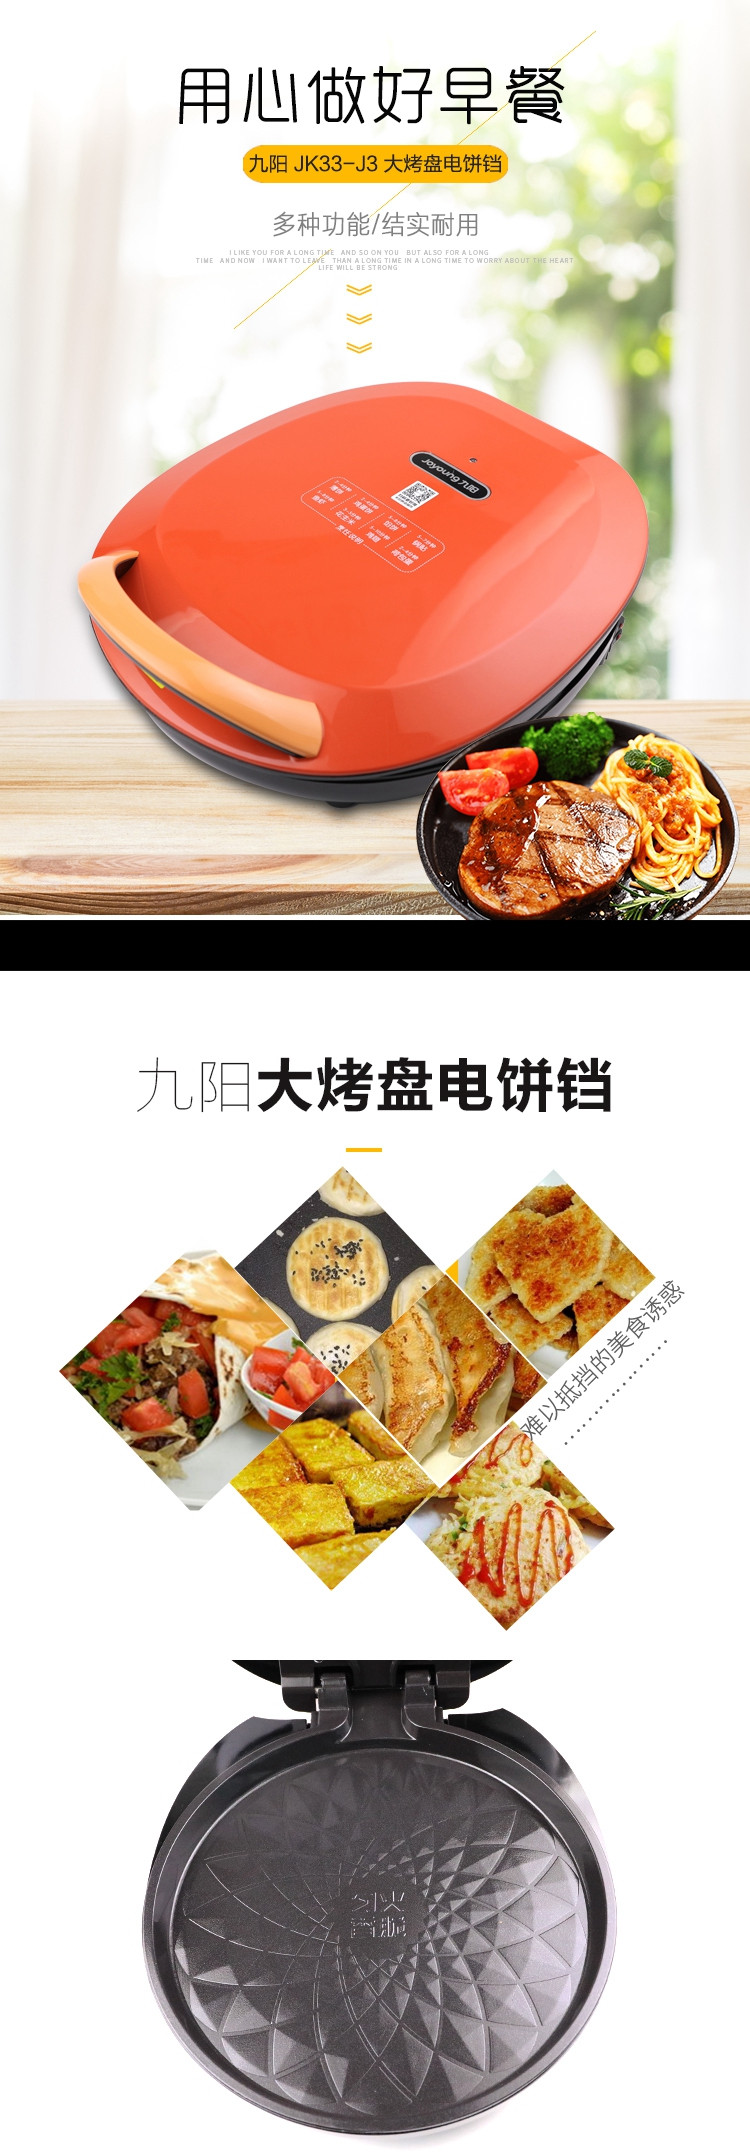 九阳/Joyoung JK33-J3 大烤盘电饼铛 匀火香脆 不粘